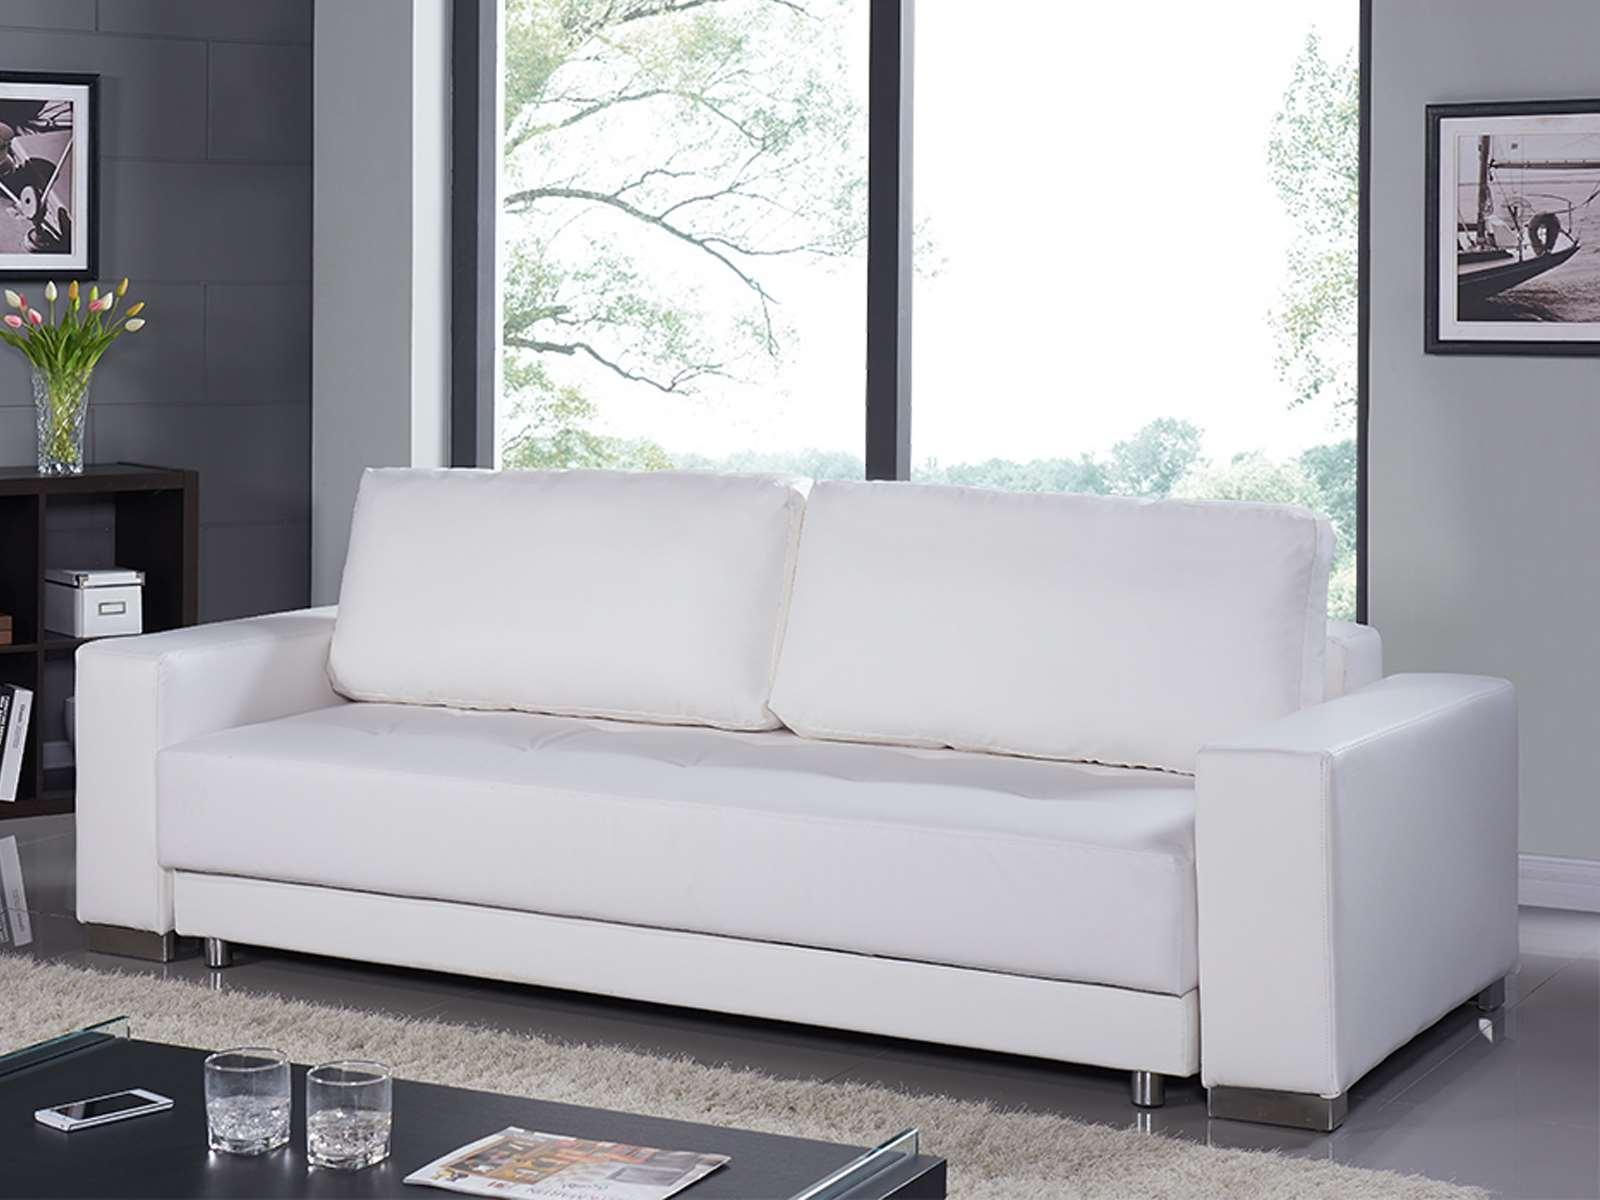 

    
Casabianca CLOE Contemporary White  Eco-Leather Sofa Bed
